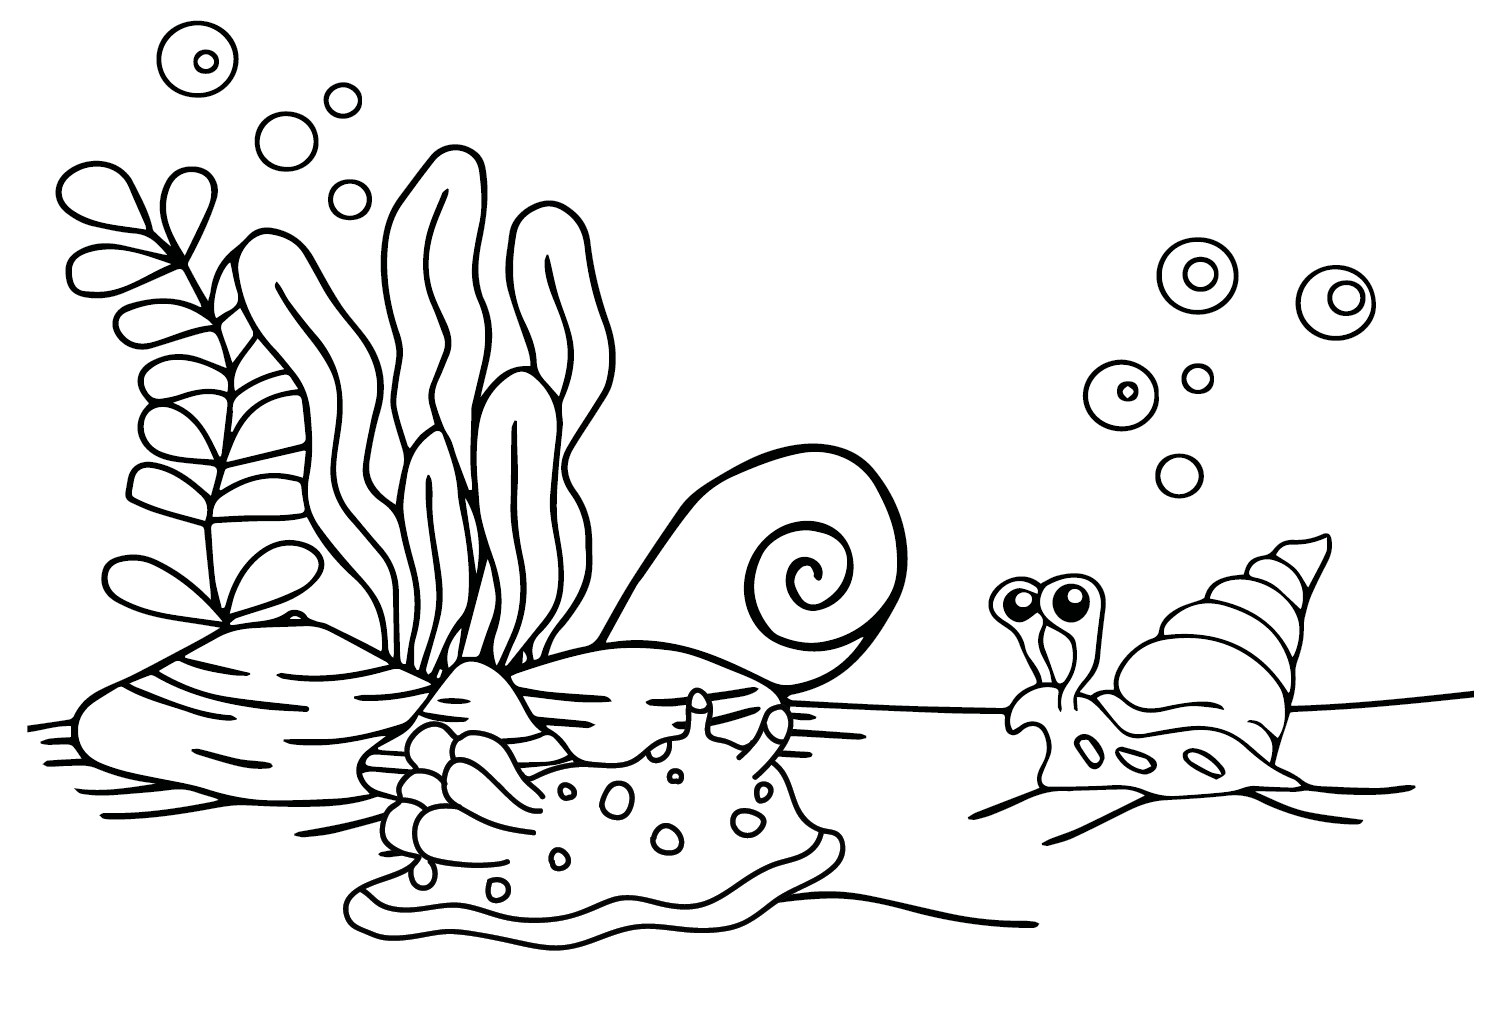 Desenhando lesma do mar de lesma do mar